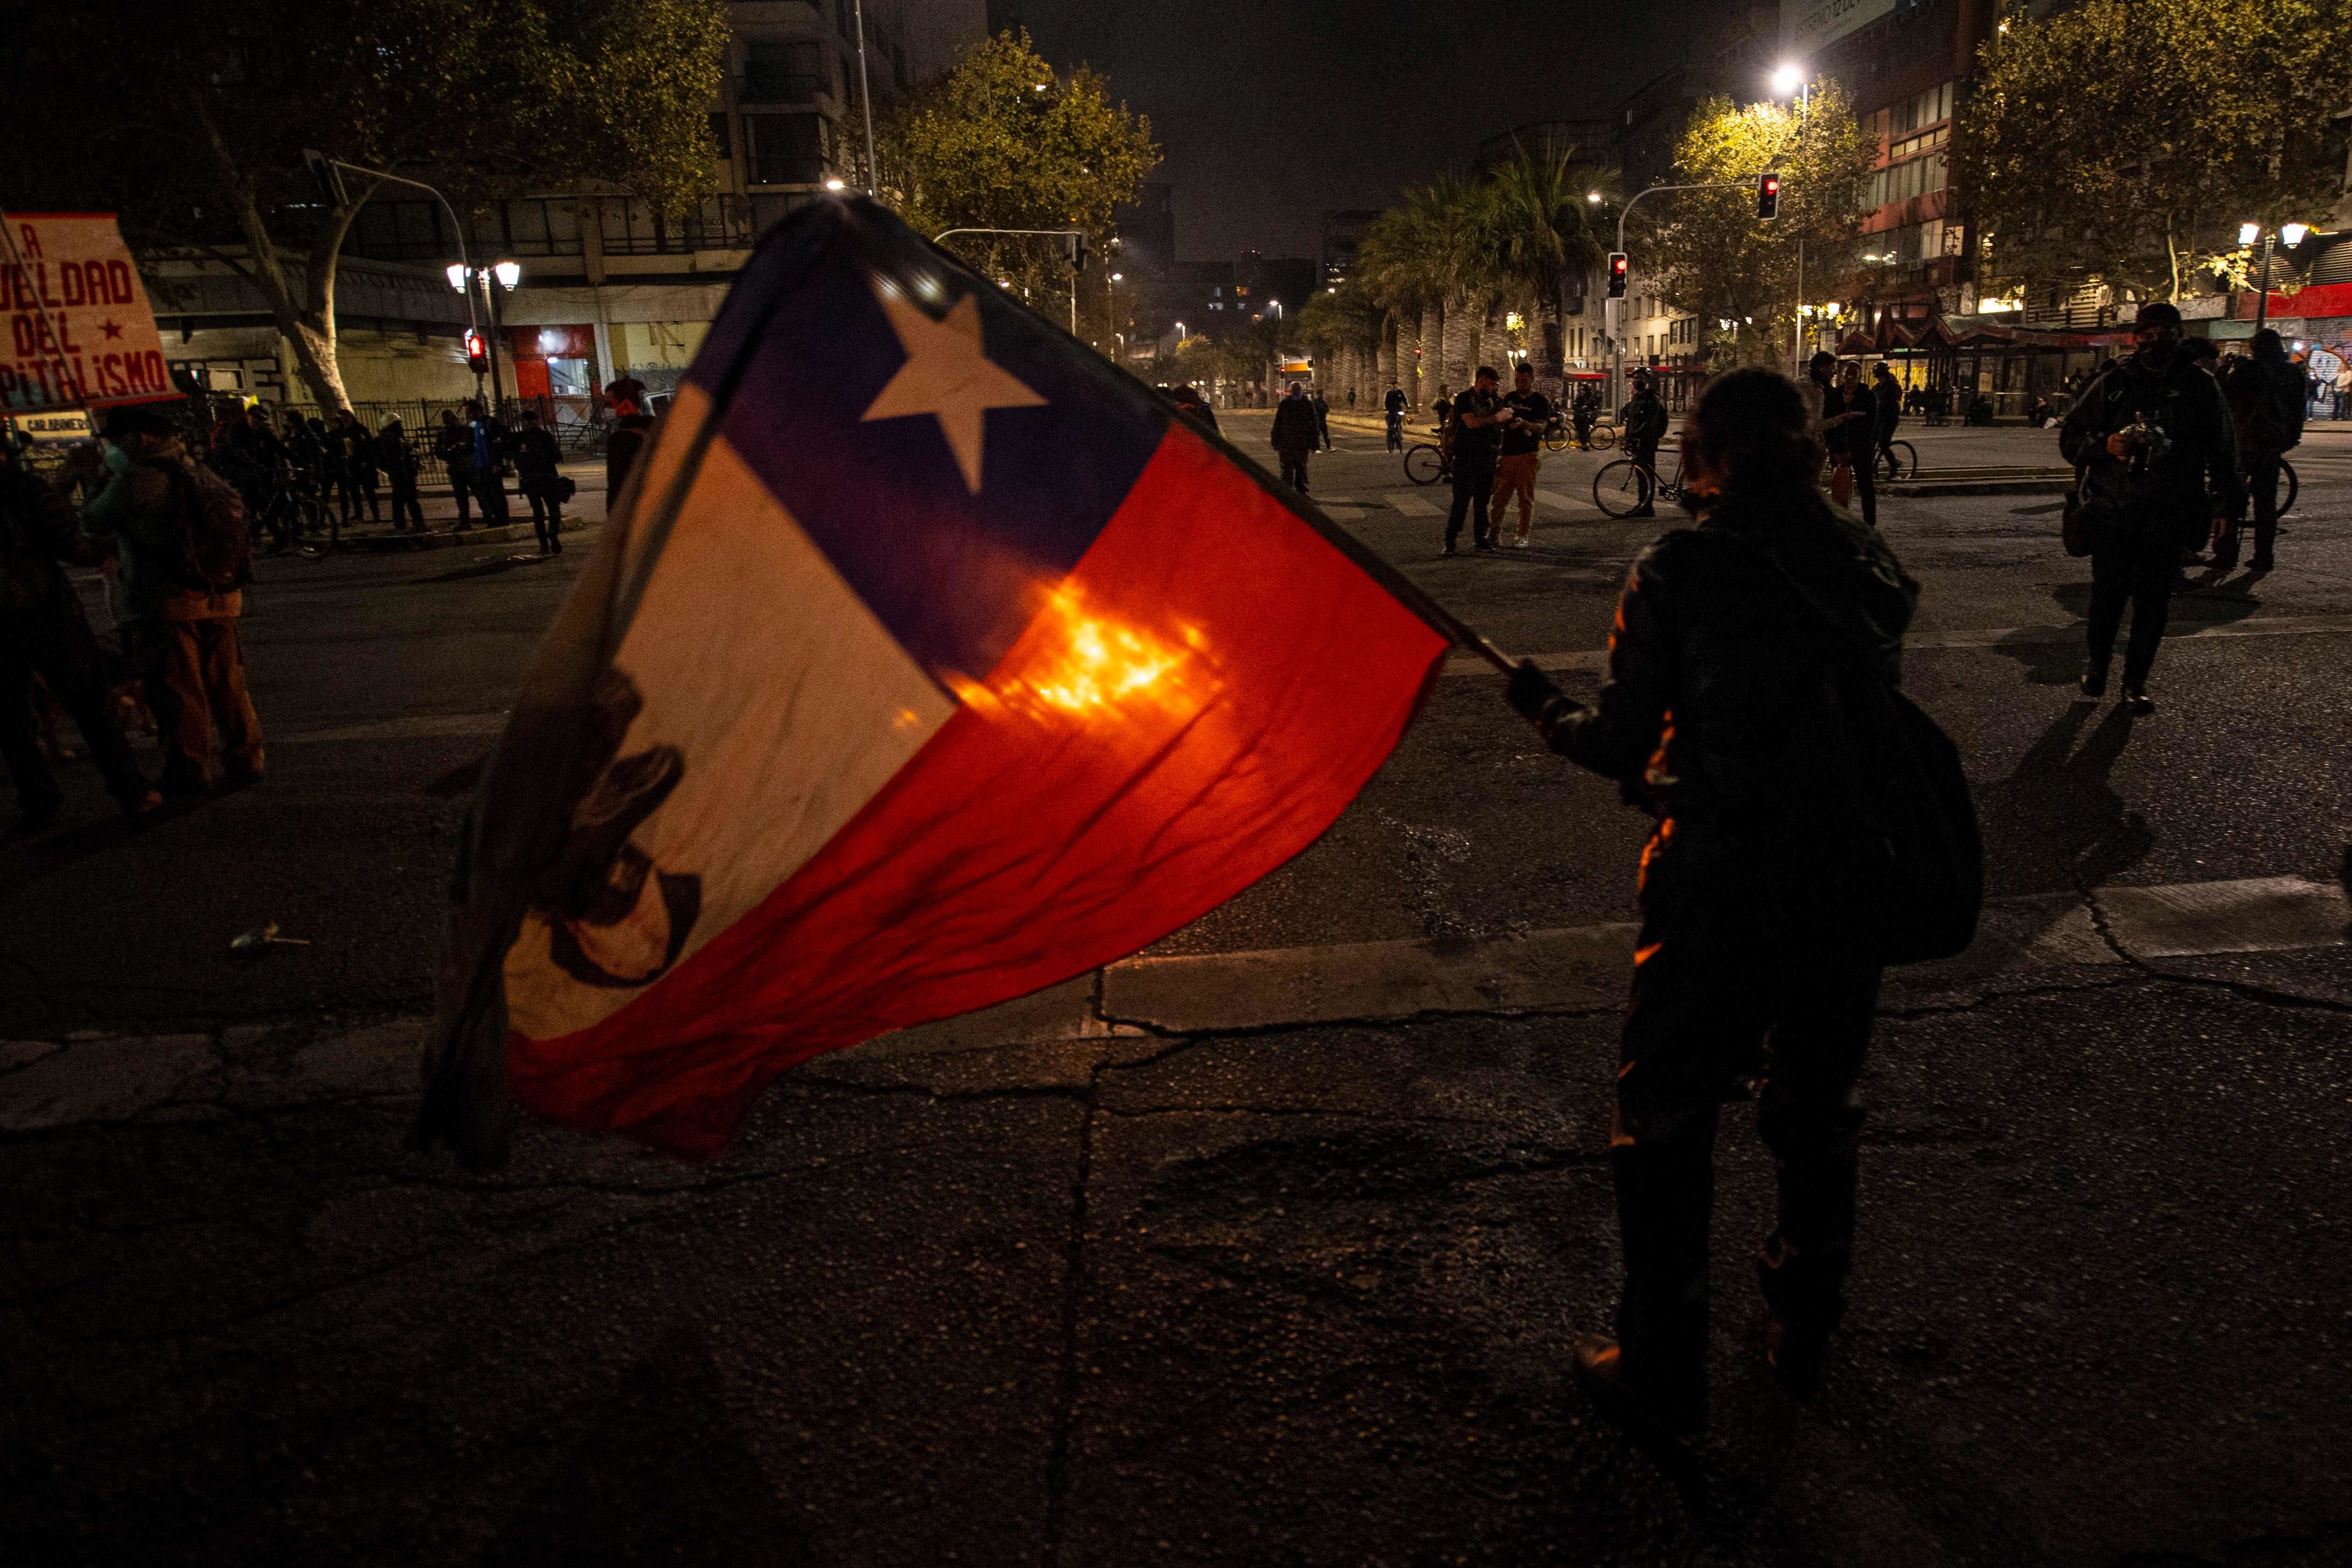 A man waving the Chilean flag in Santiago.